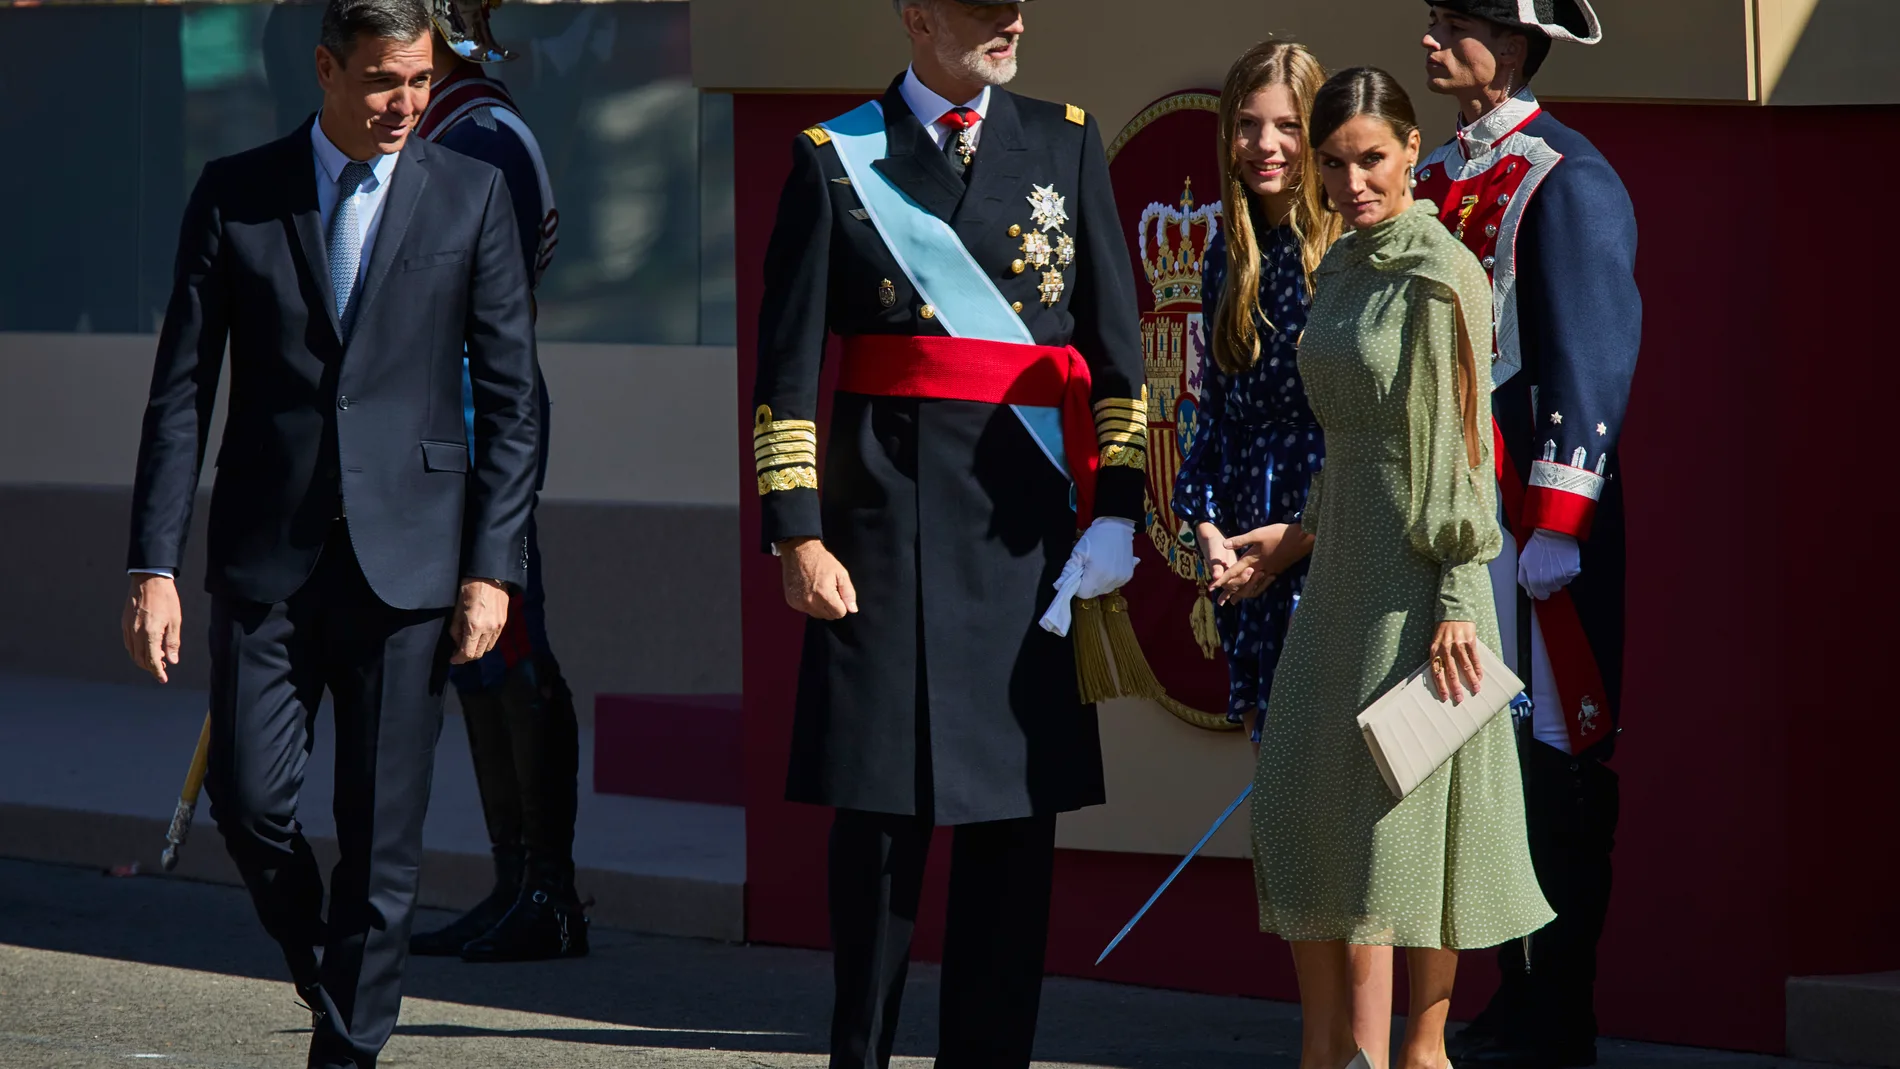 El rey Felipe VI preside el desfile del Día de la Fiesta Nacional, este miércoles, en Madrid, acompañado por la reina Letizia, la infanta Sofía y el presidente del Gobierno, Pedro Sánchez